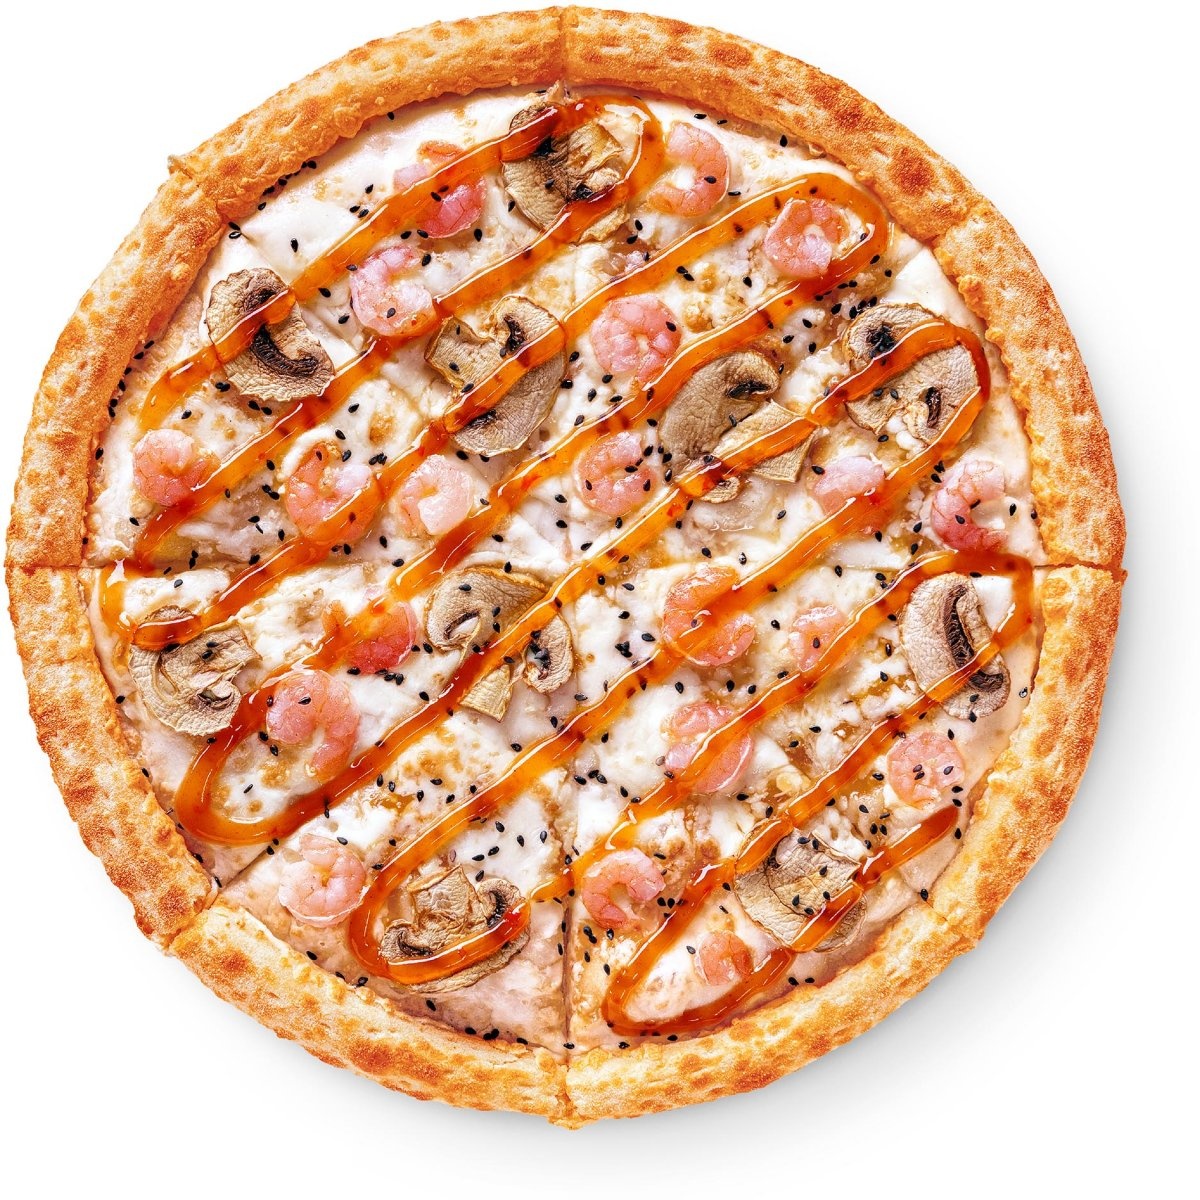 состав пиццы пепперони в додо фото 96